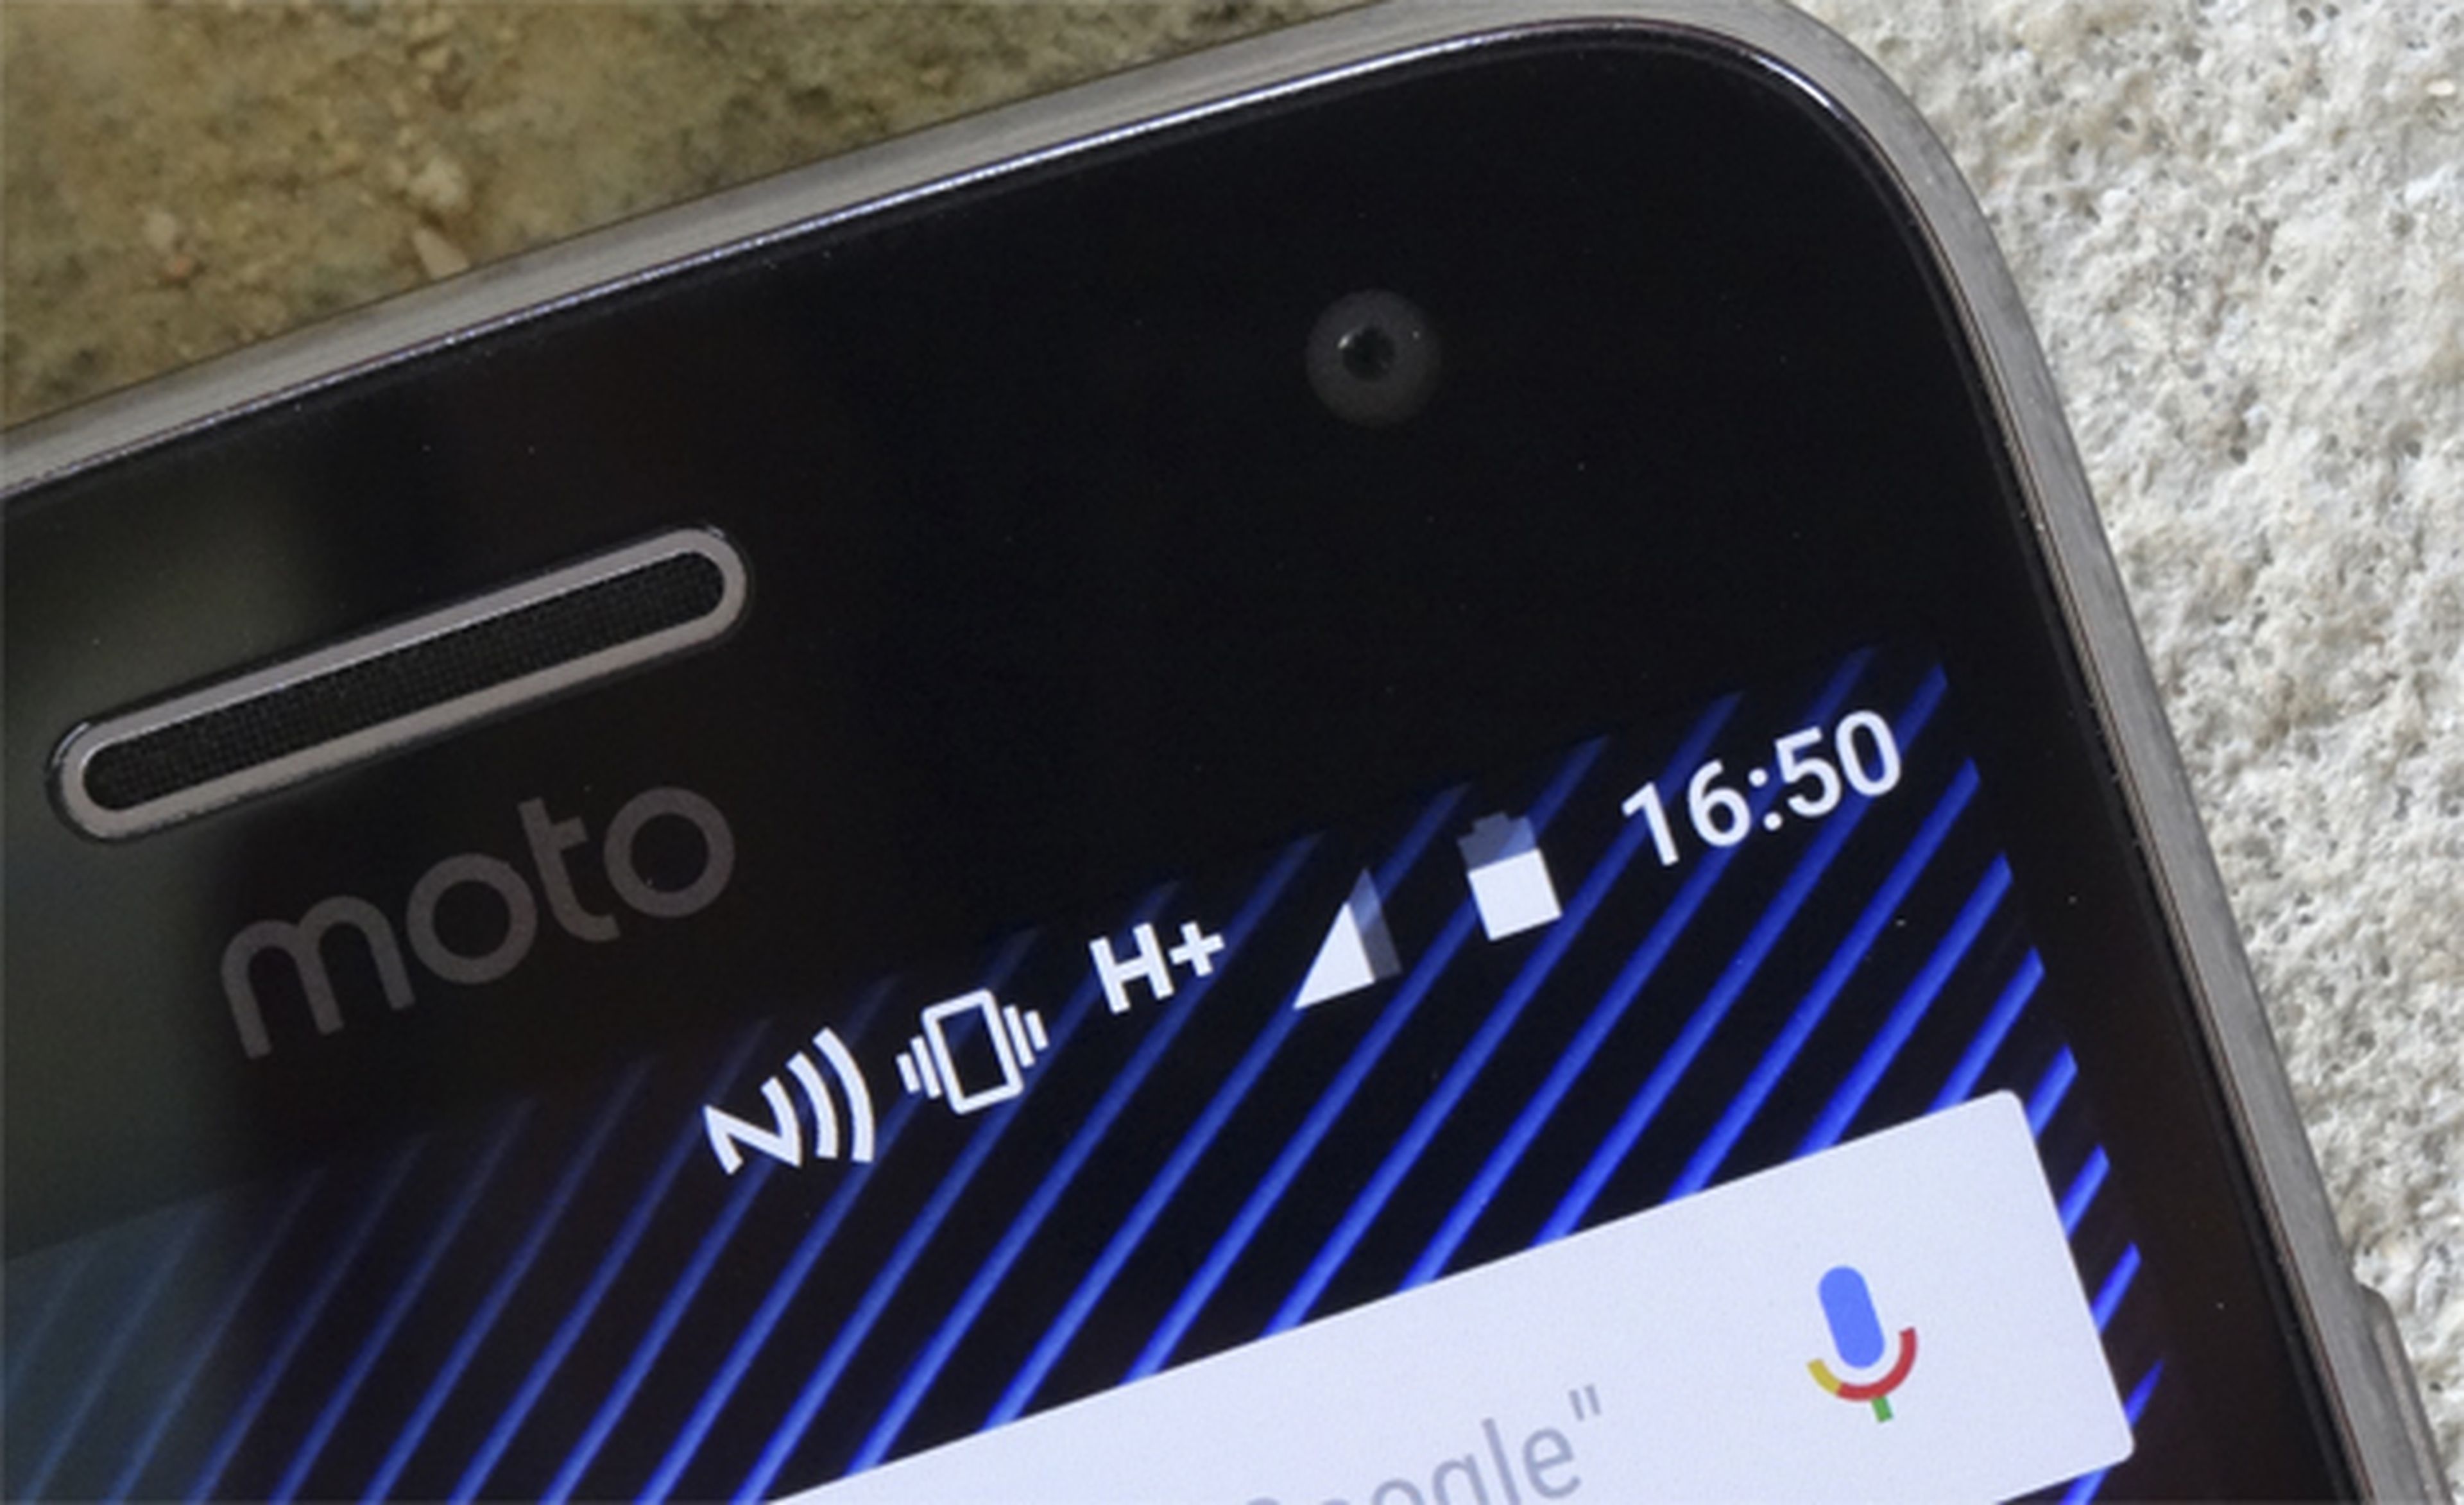 Sigamos con nuestras opiniones de la pantalla del Moto G5 Plus